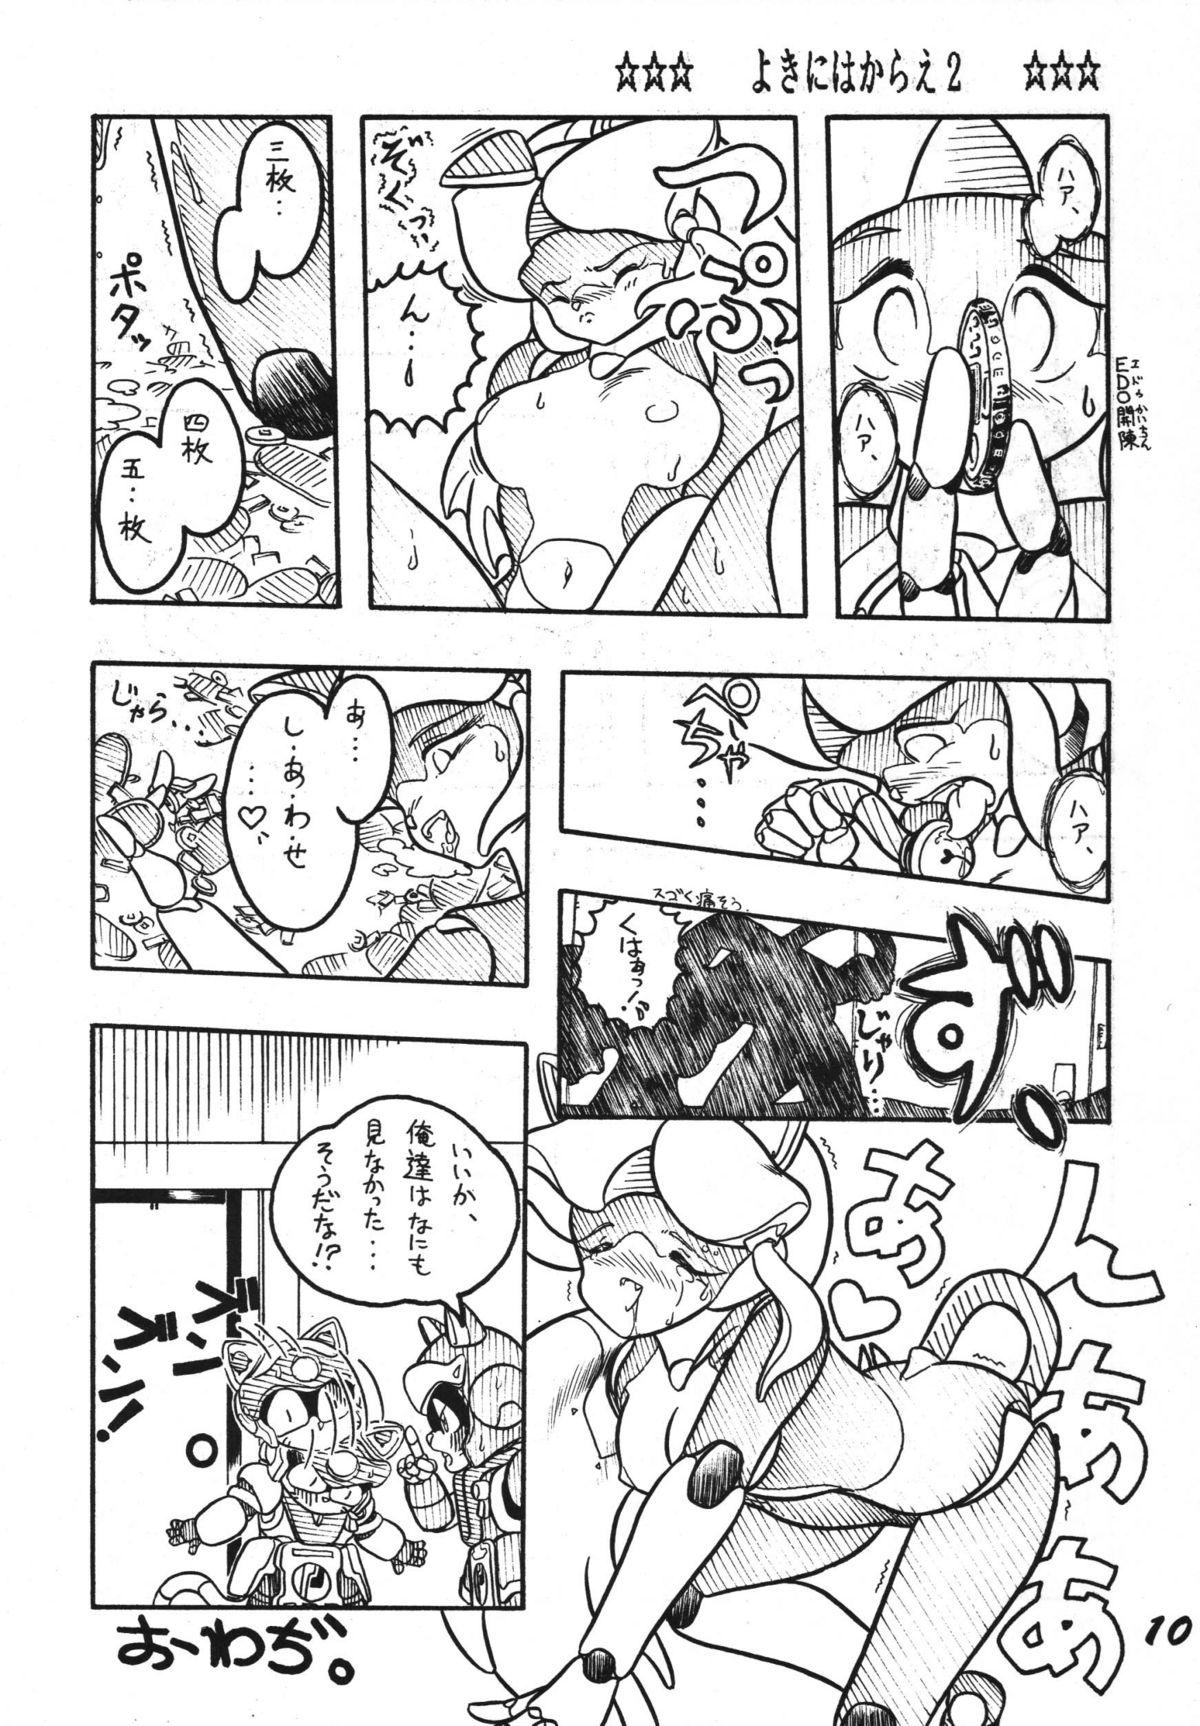  Yokini Hakarae - Ni no Maki - Samurai pizza cats Bus - Page 10